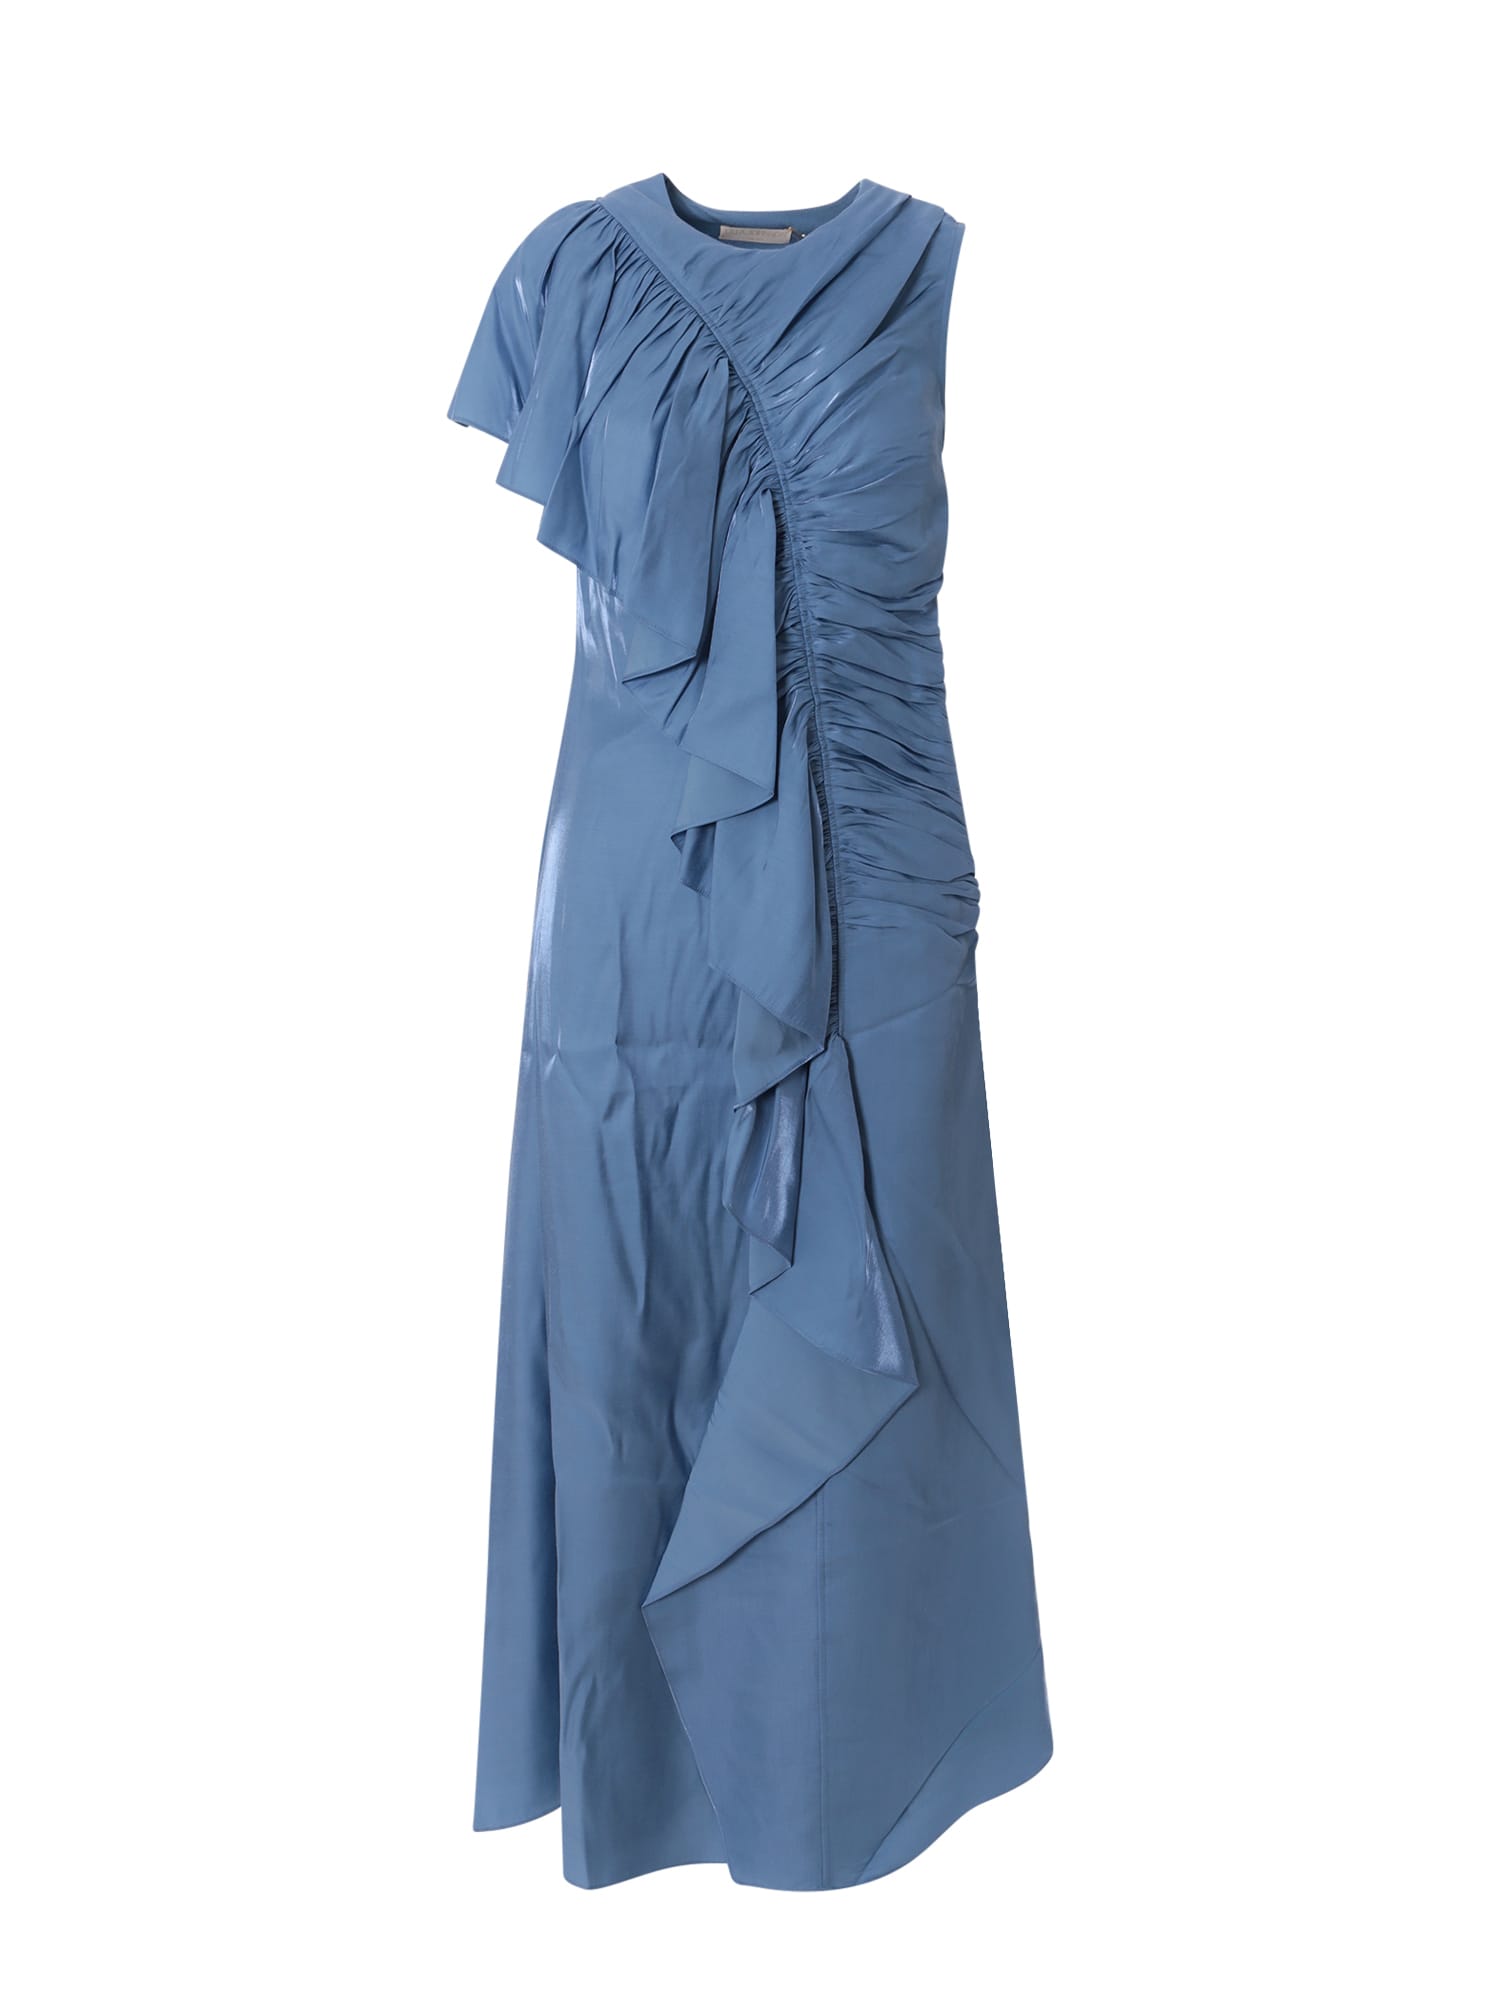 Louis Blue Dress – Tolani